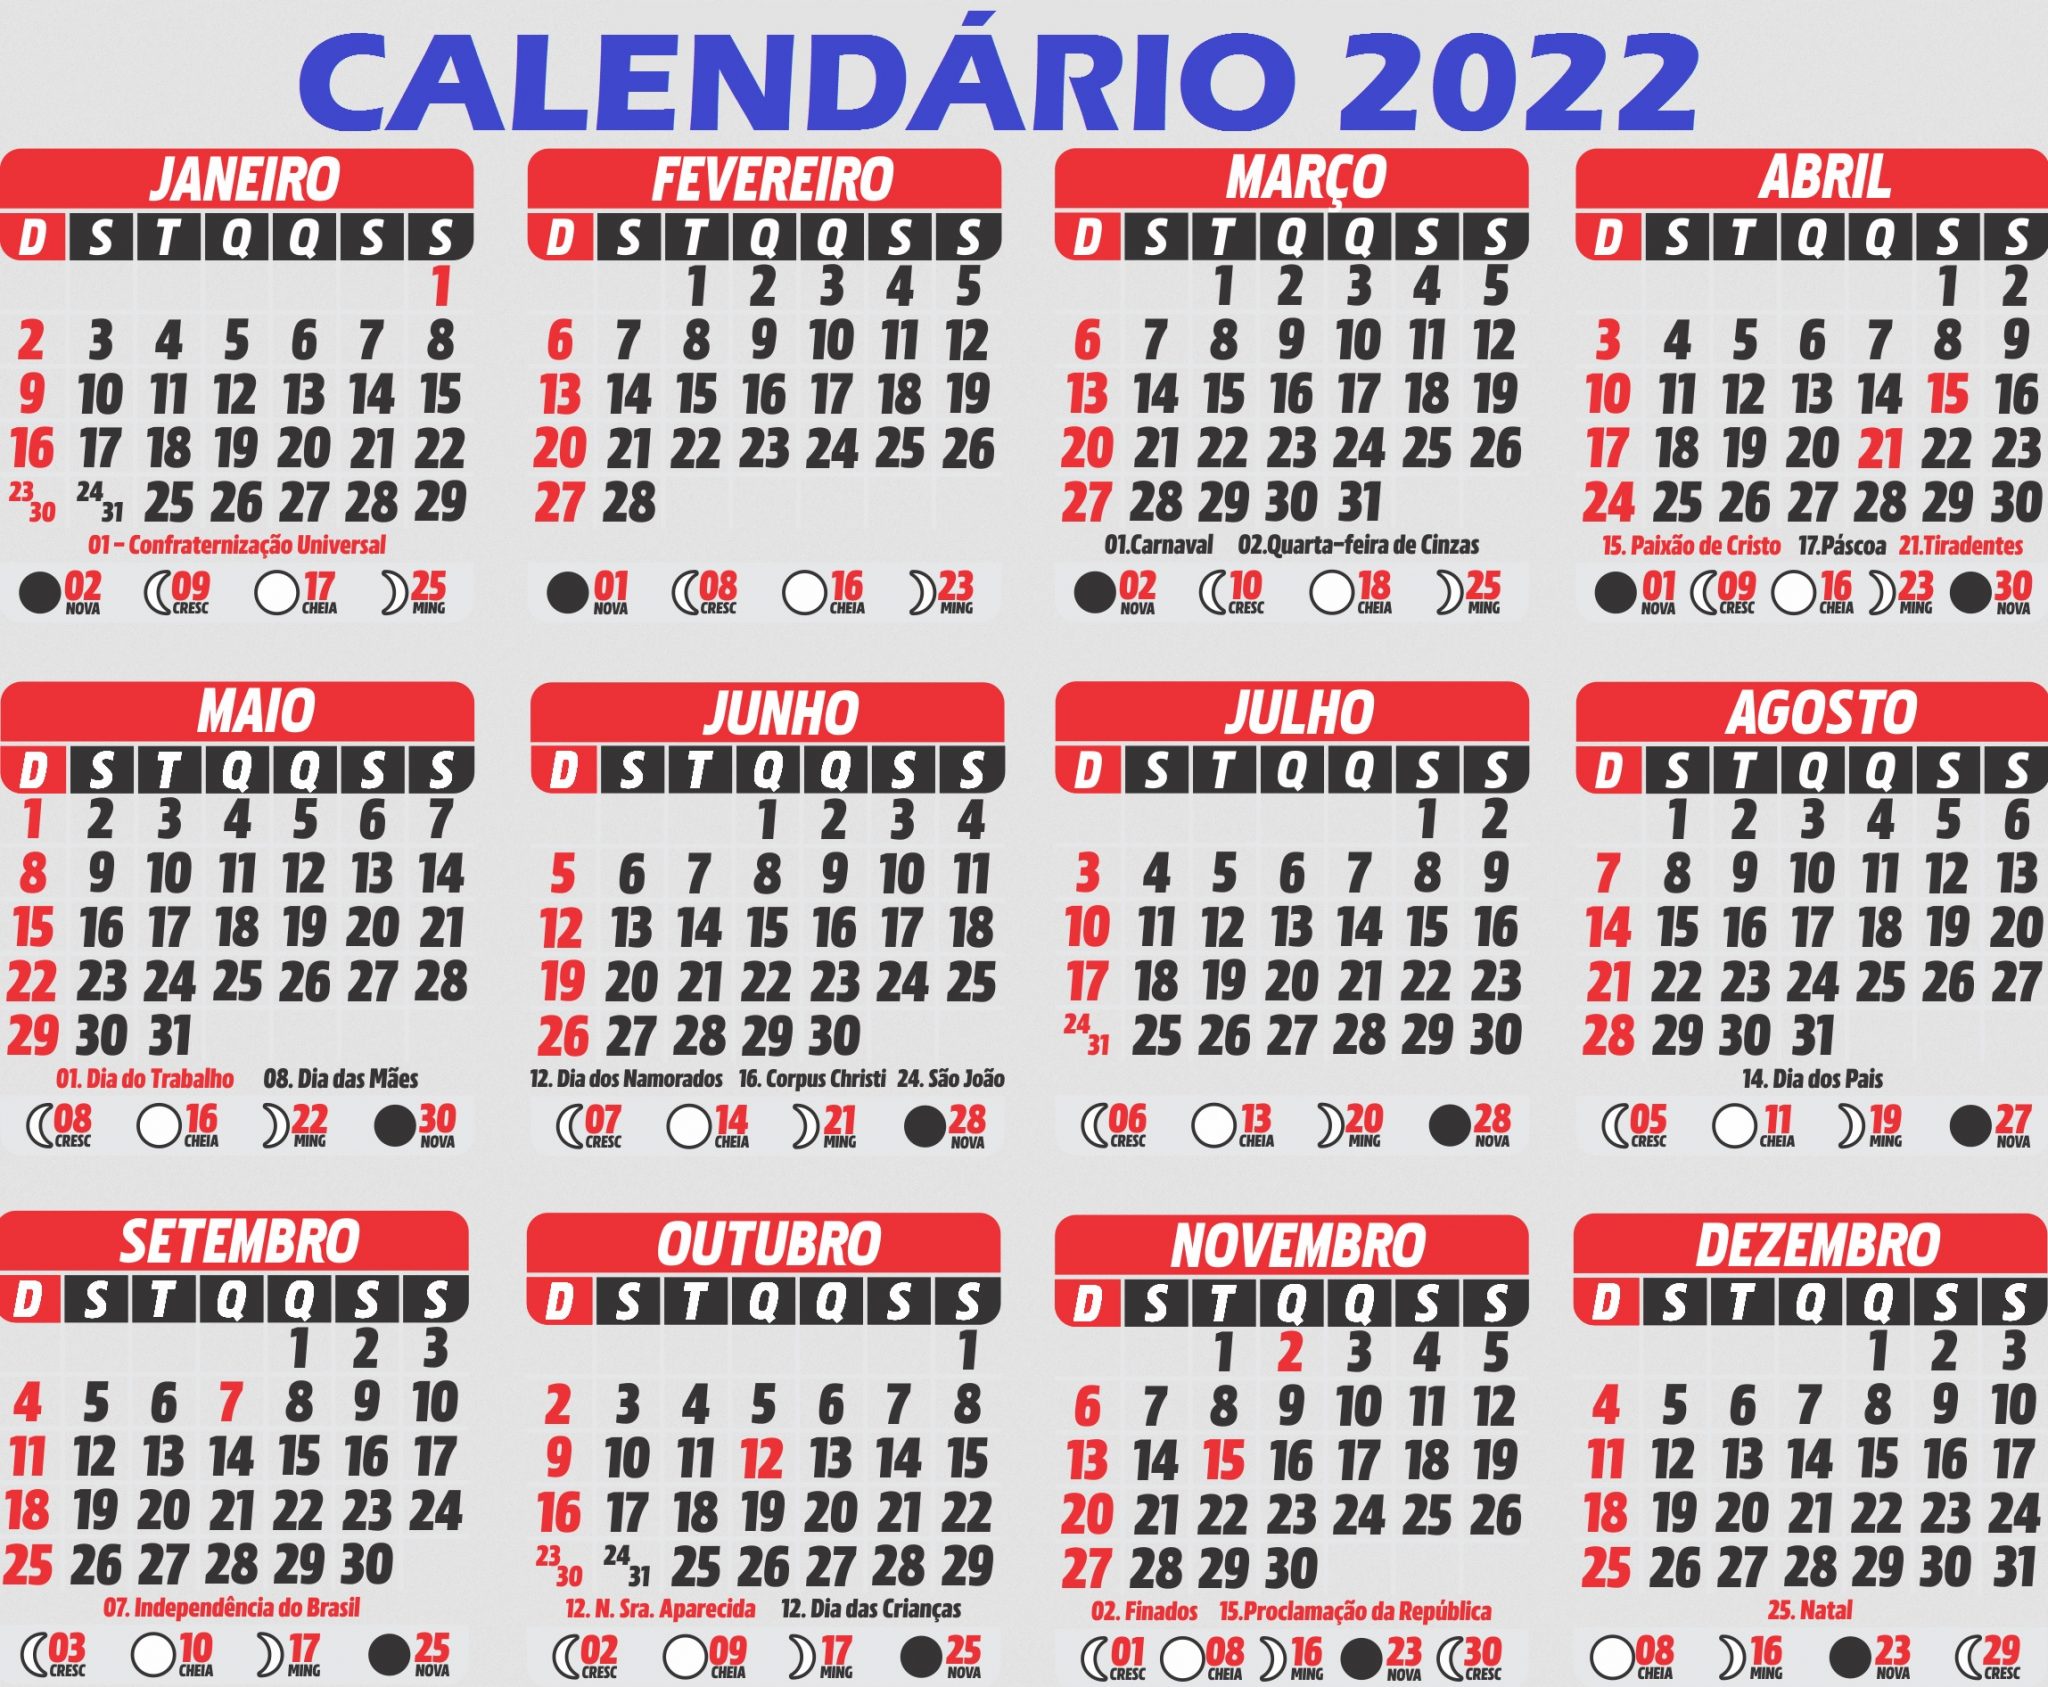 CalendÁrio 2022 Completo Com Todos Os Feriados Nacionais E Luas De 2022